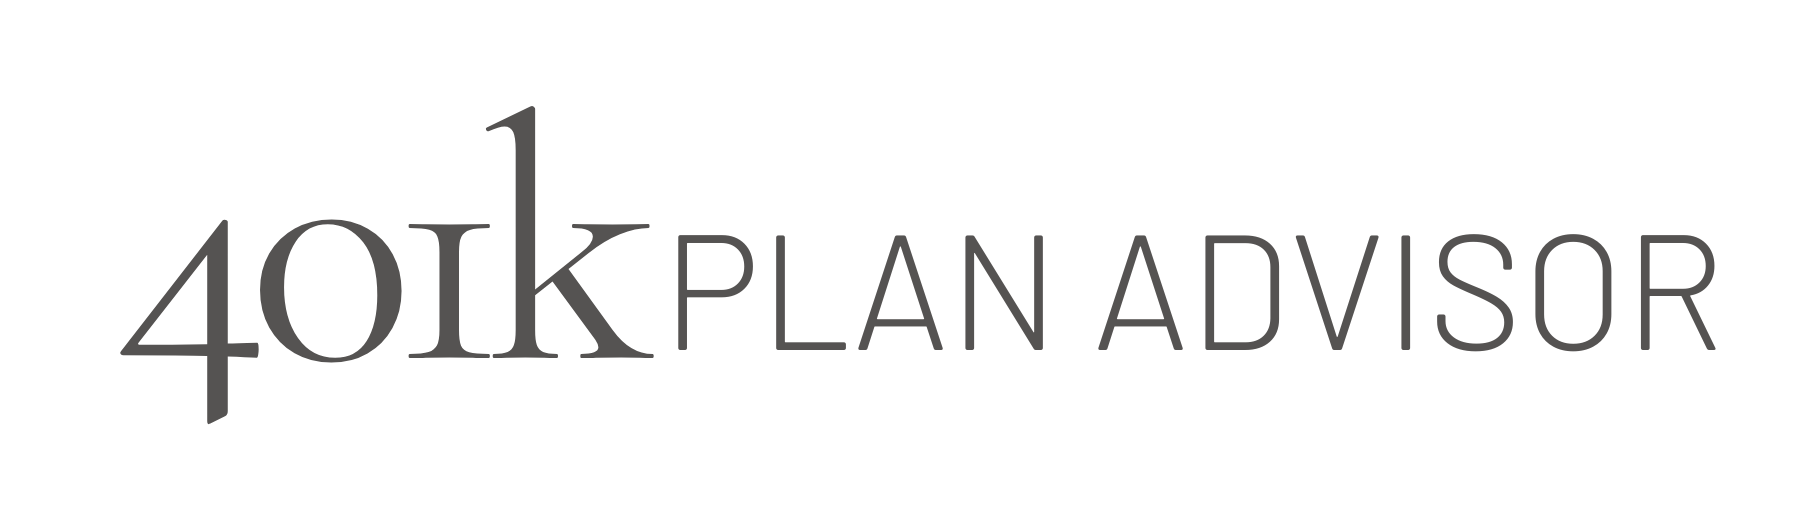 401k Plan Advisor logo